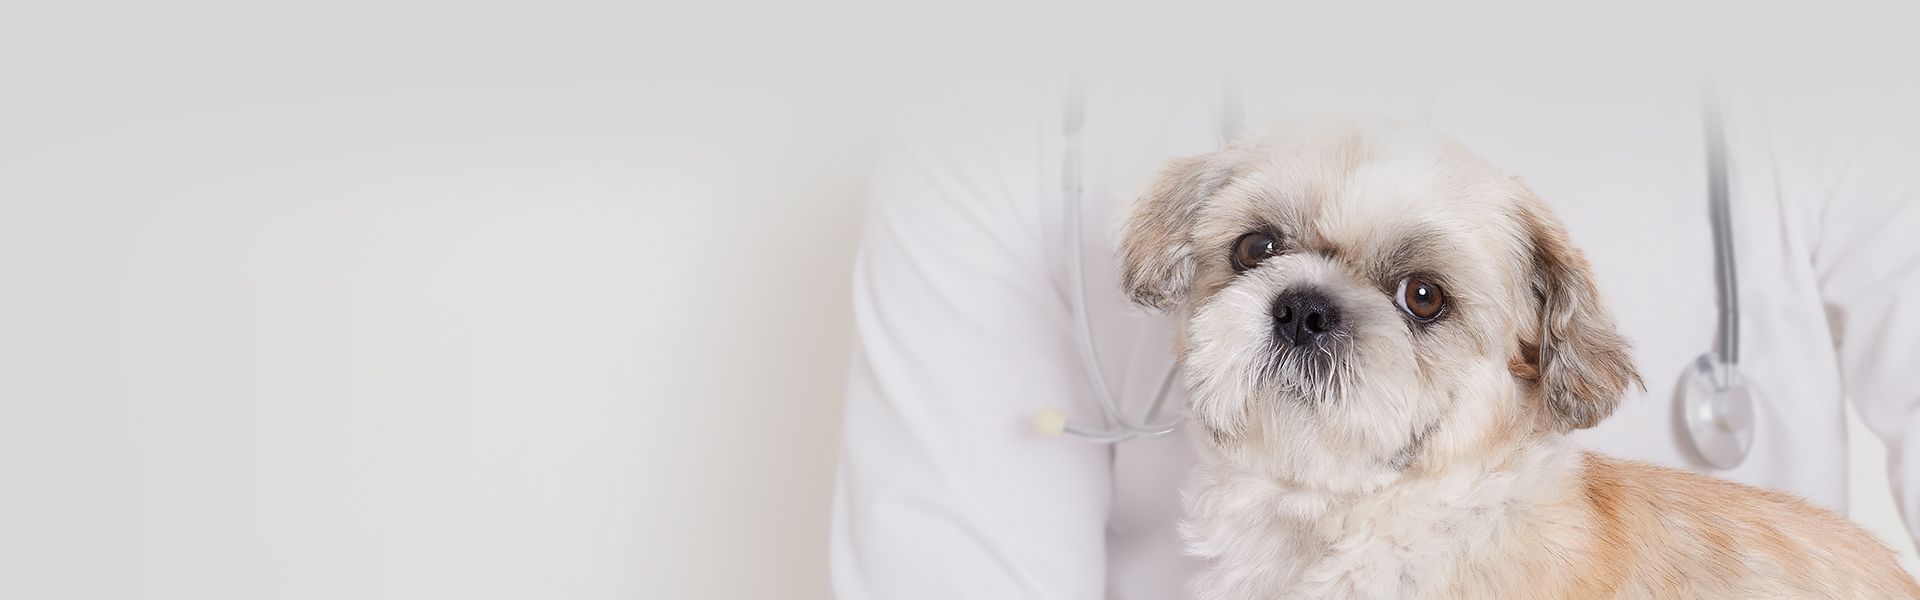 vet holding white furry dog